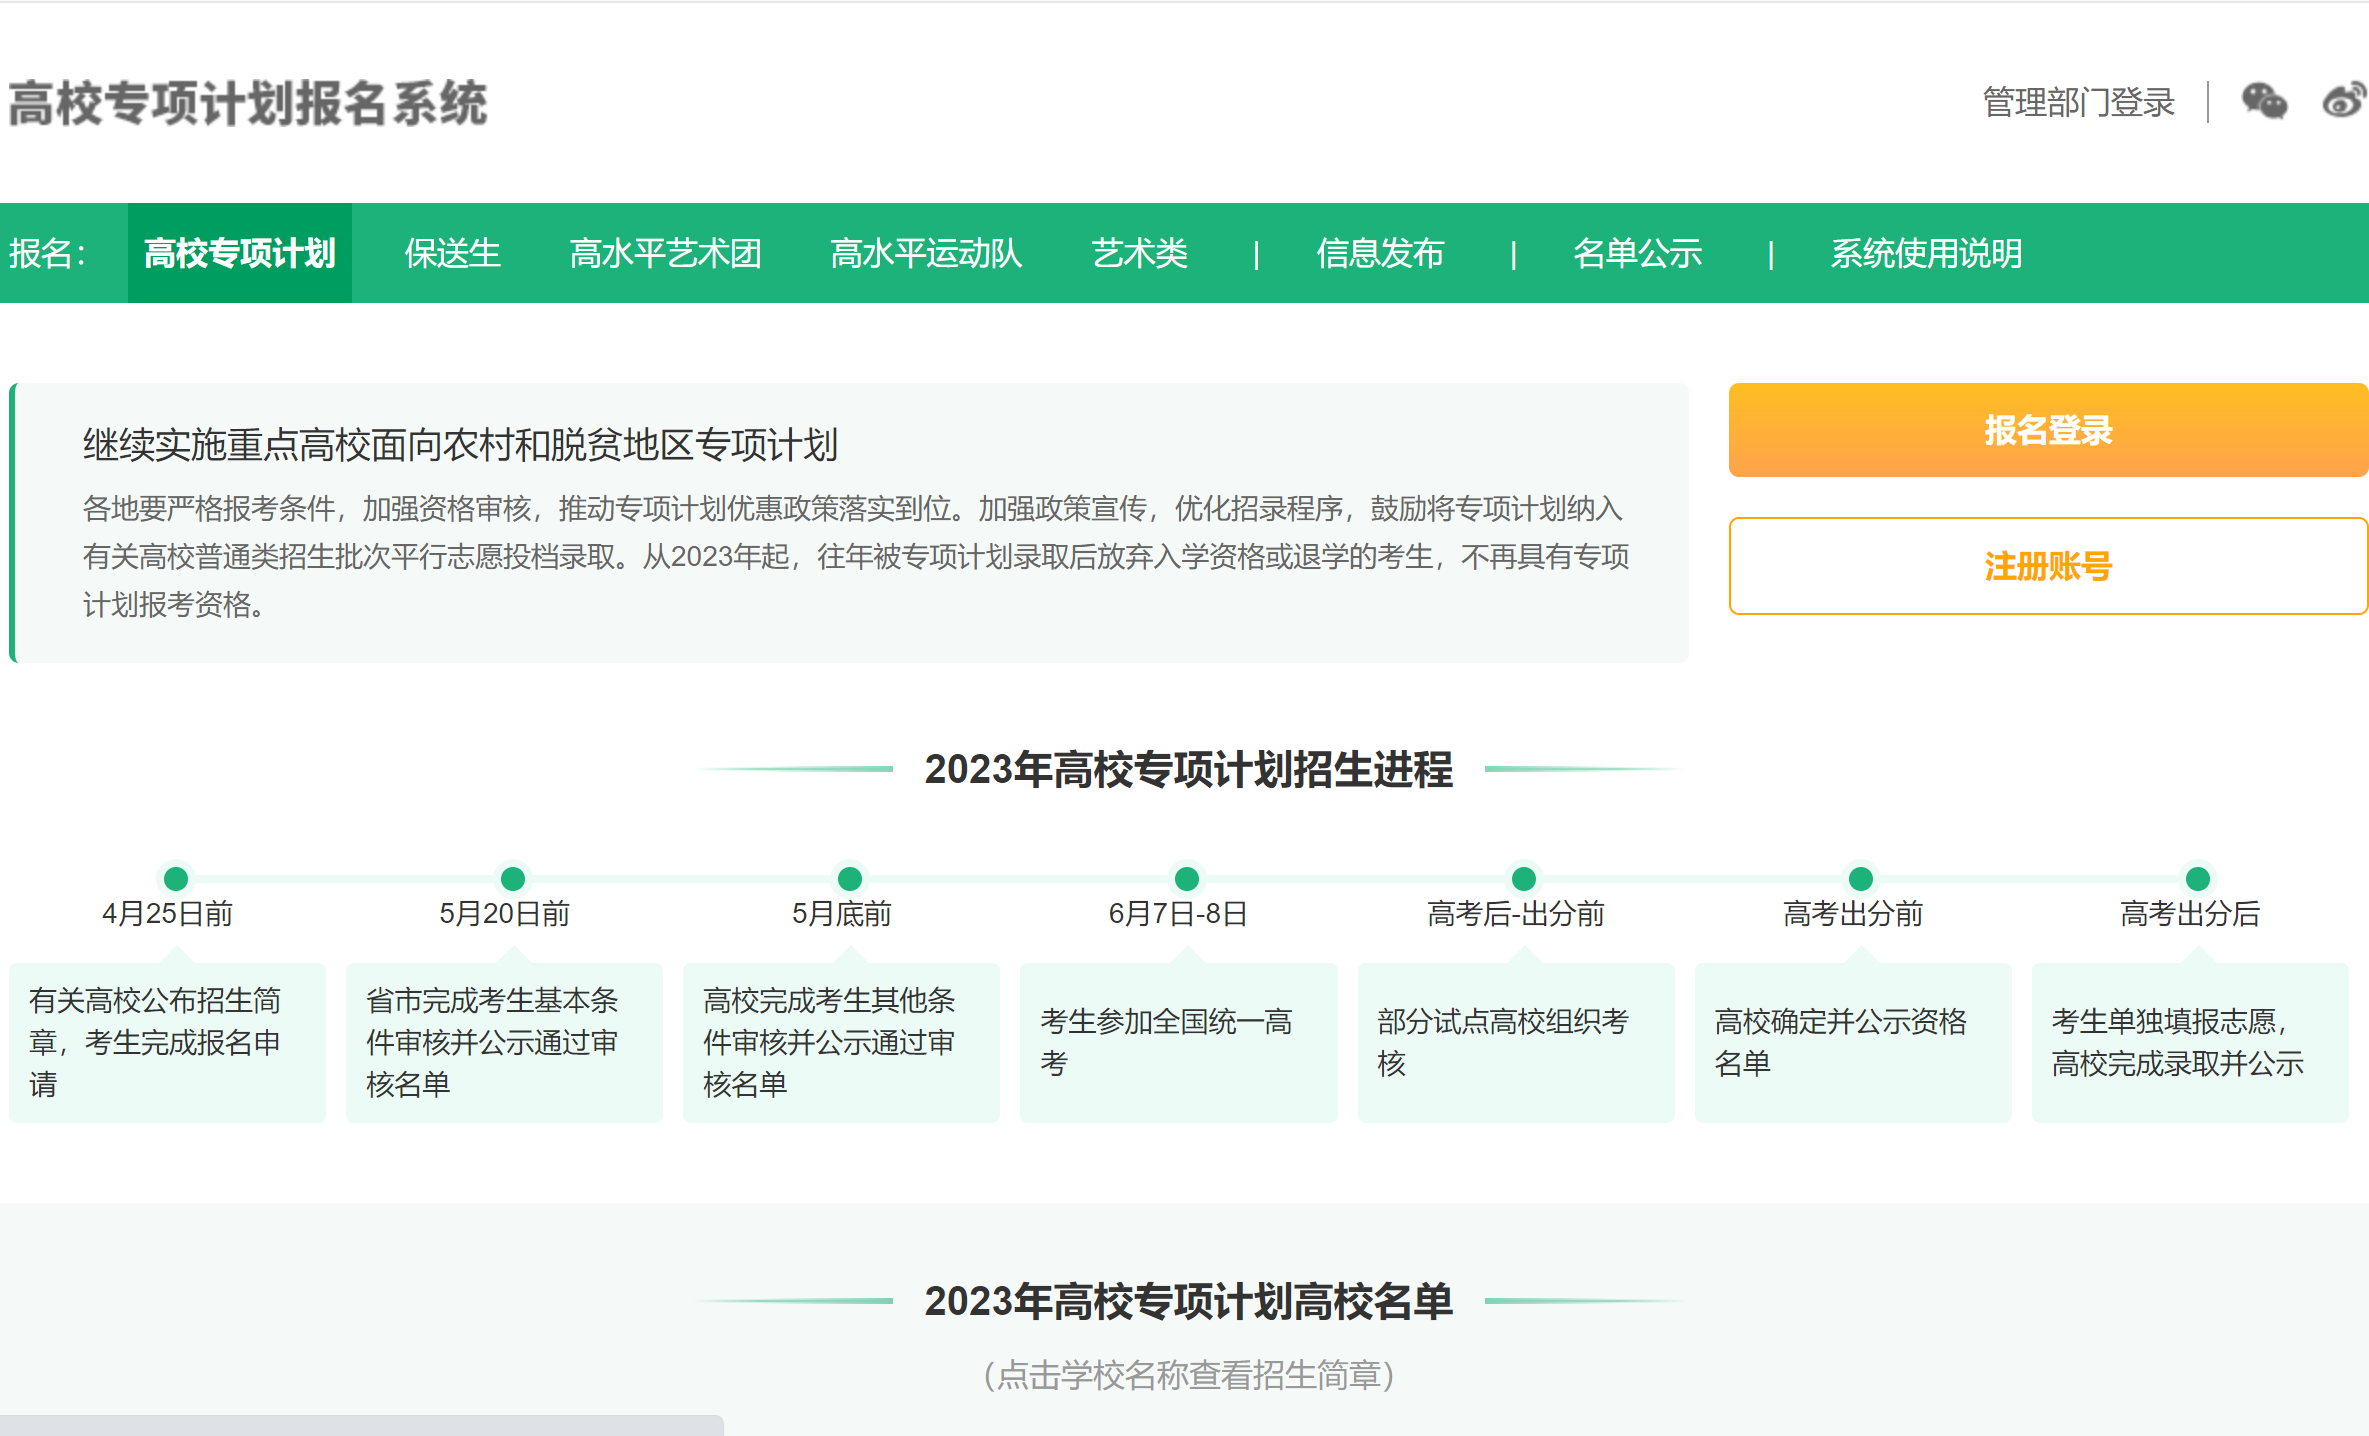 2023华中科技大学高校专项计划报名时间及报名入口